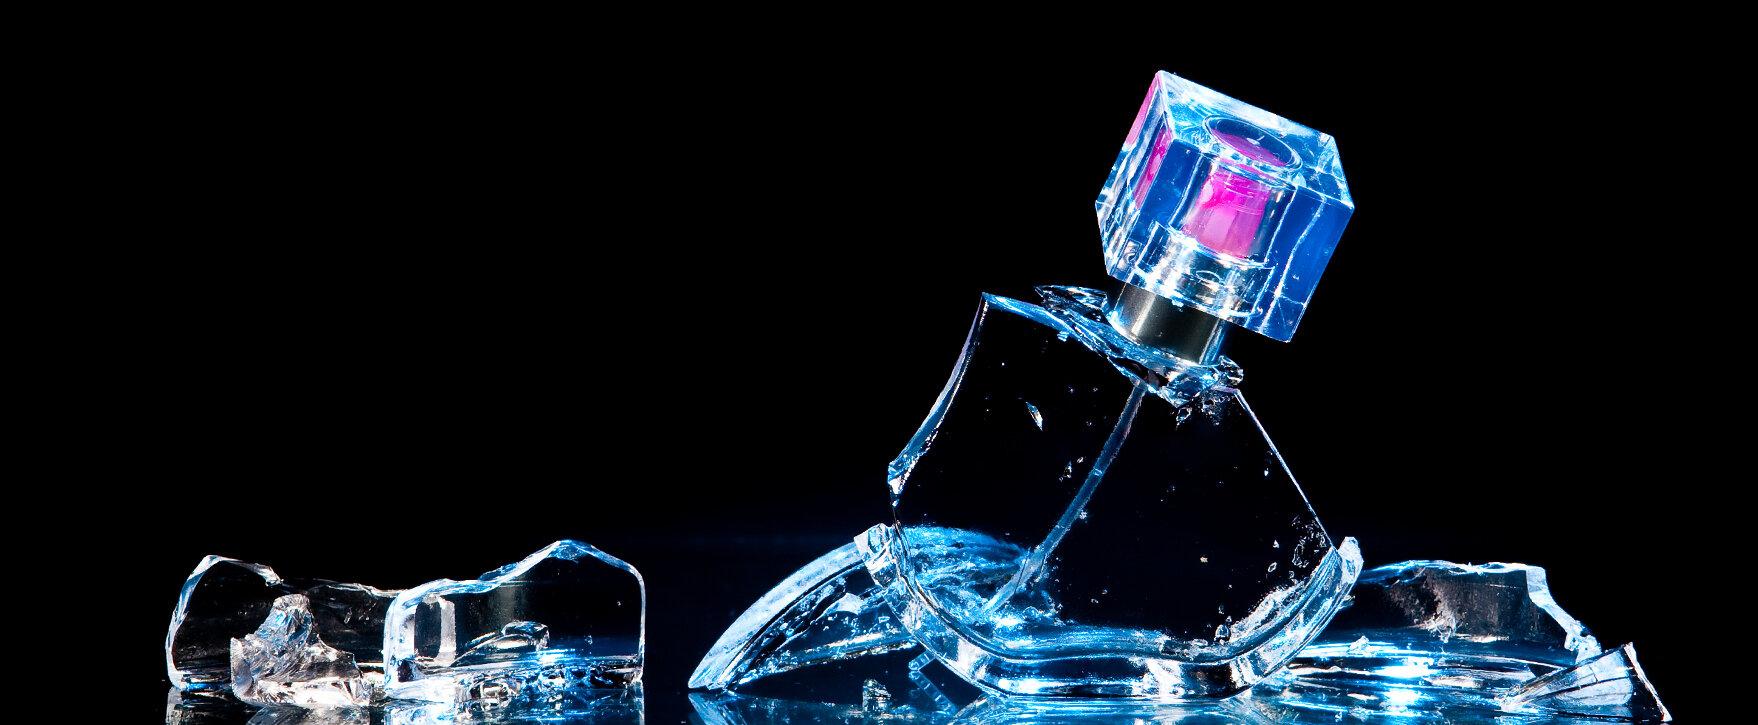 Verborgene Wahrheiten: Parfum-Mythen auf dem Prüfstand